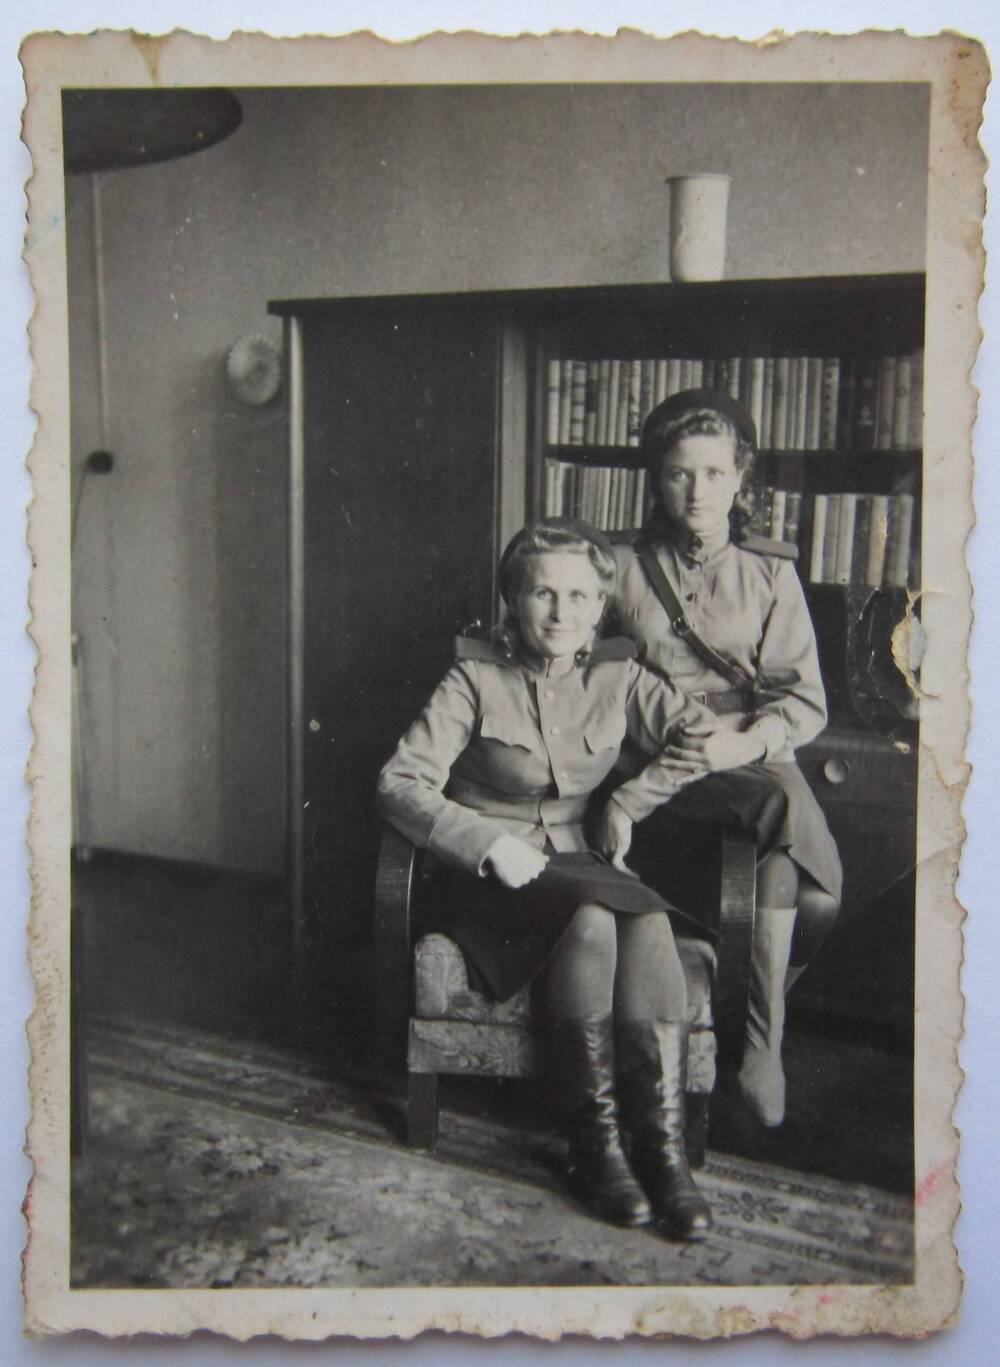 Фотоснимок. На фото две девушки в военной форме, сидящие на одном кресле. На заднем плане виден большой шкаф с книгами. 40-е годы.
Коллекция фотографий 40-50-х годов, собранная 
Березнёвой М. А.